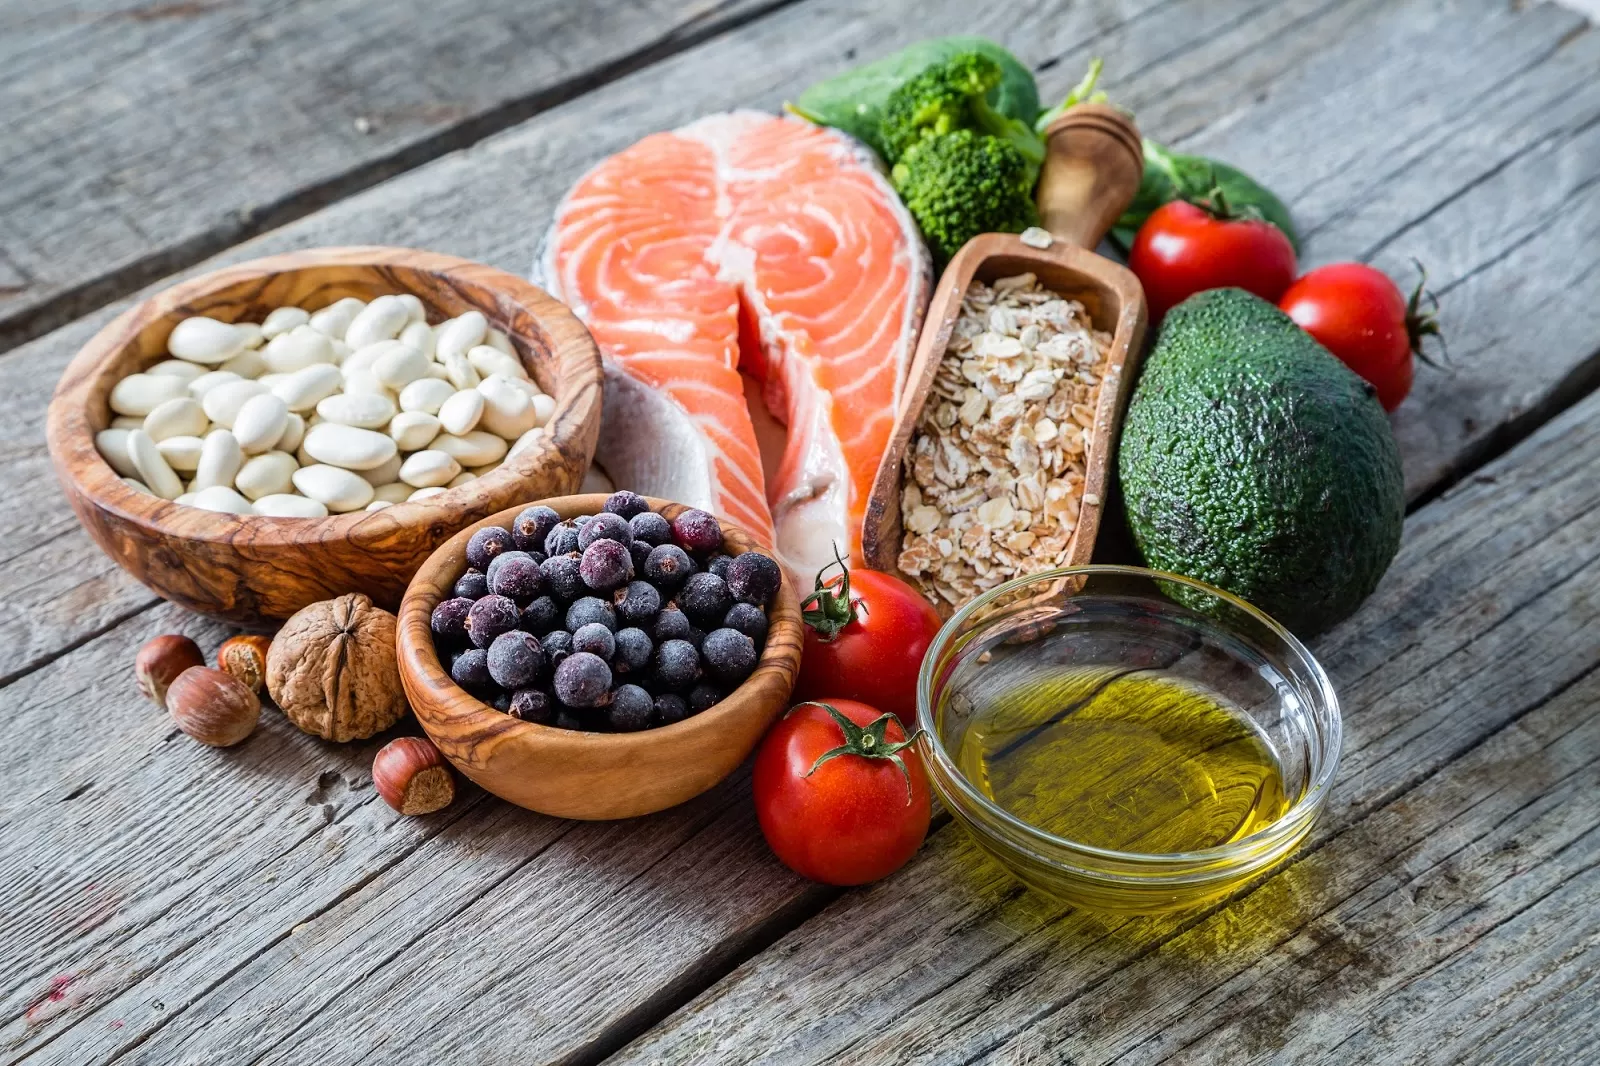 Учёные: Скандинавская диета снижает уровень холестерина и сахара в крови, даже если вы не худеете